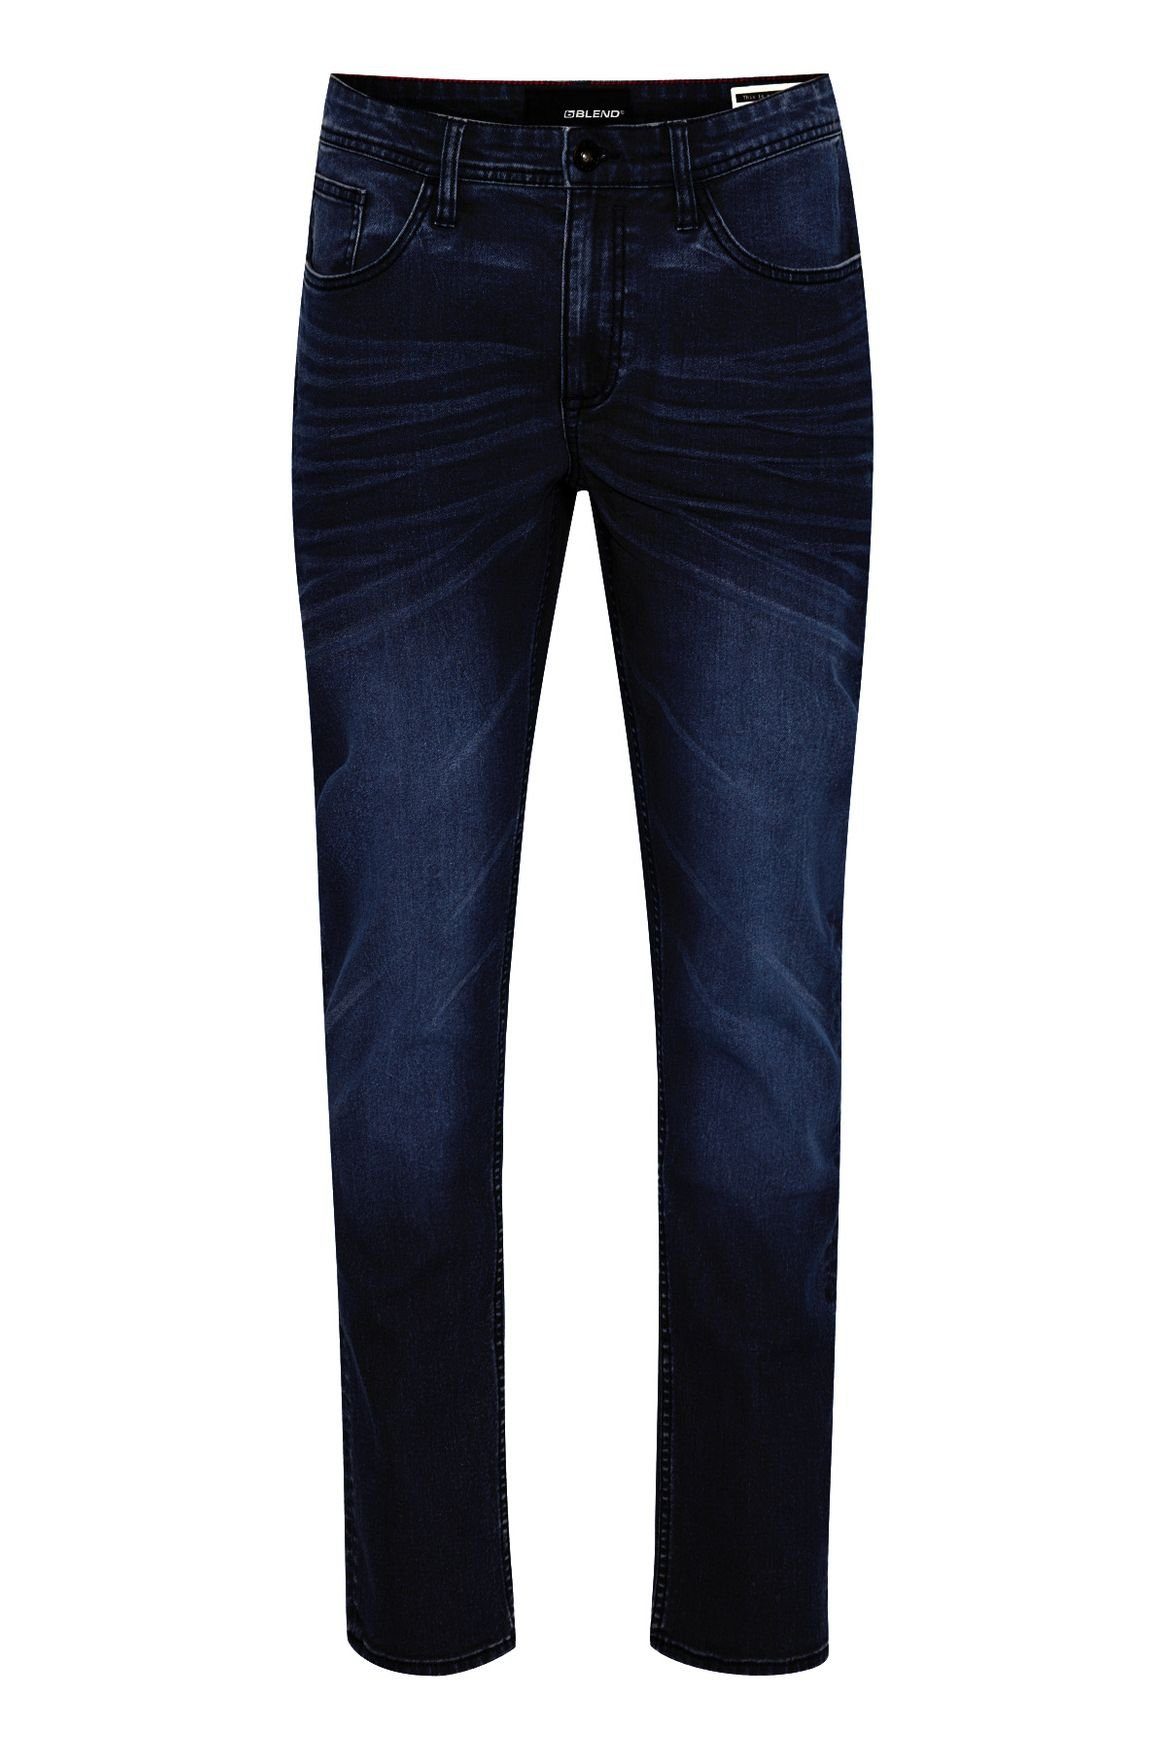 Blend Slim-fit-Jeans Slim Fit Jeans Basic Denim Hose Stoned Washed TWISTER FIT 4515 in Dunkelblau